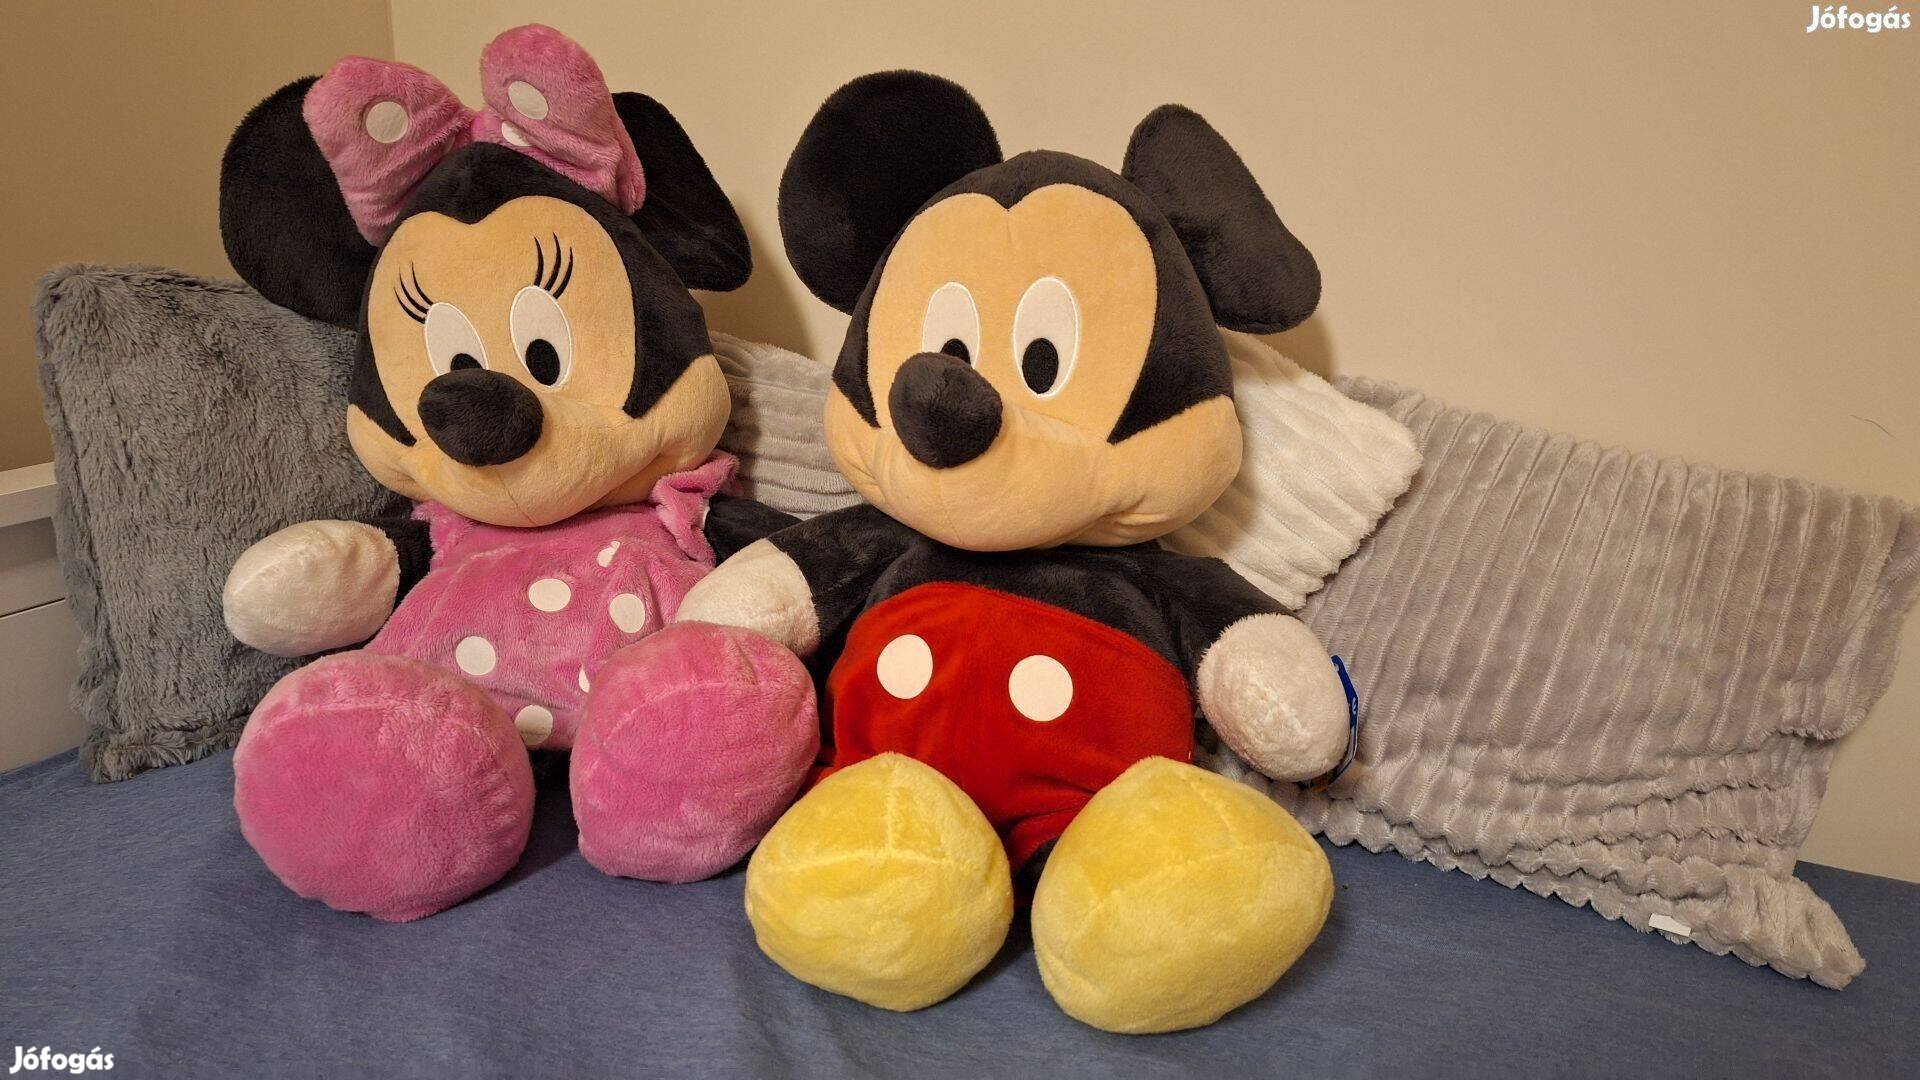 Mickey egér(65cmes) és állatfigurás plüssök eladók